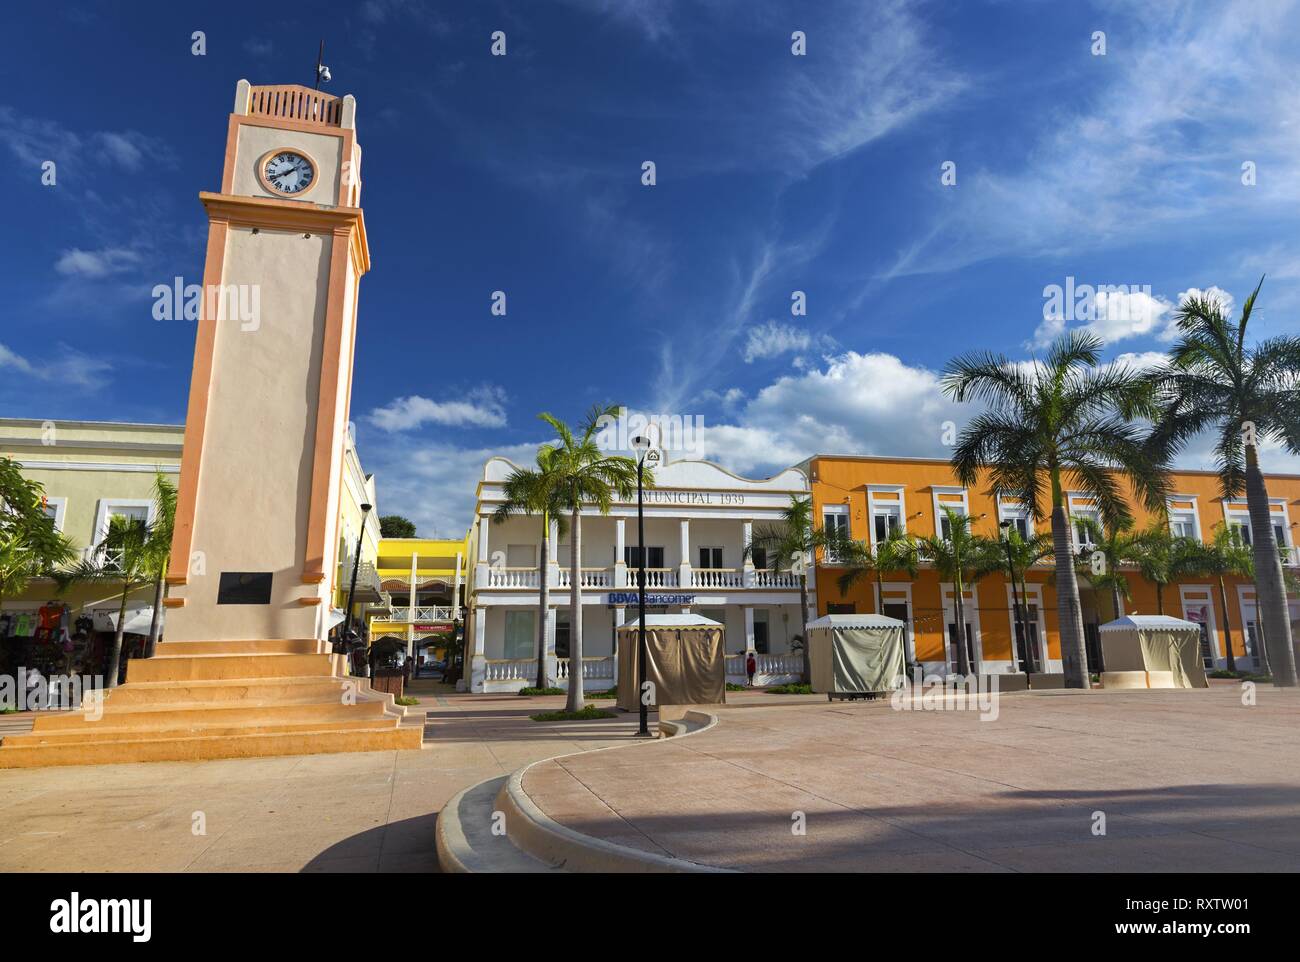 Plaza Del sol Town Square avec tour horloge et palmiers tropicaux dans le centre-ville de San Miguel de Cozumel, péninsule du Yucatan au Mexique Banque D'Images